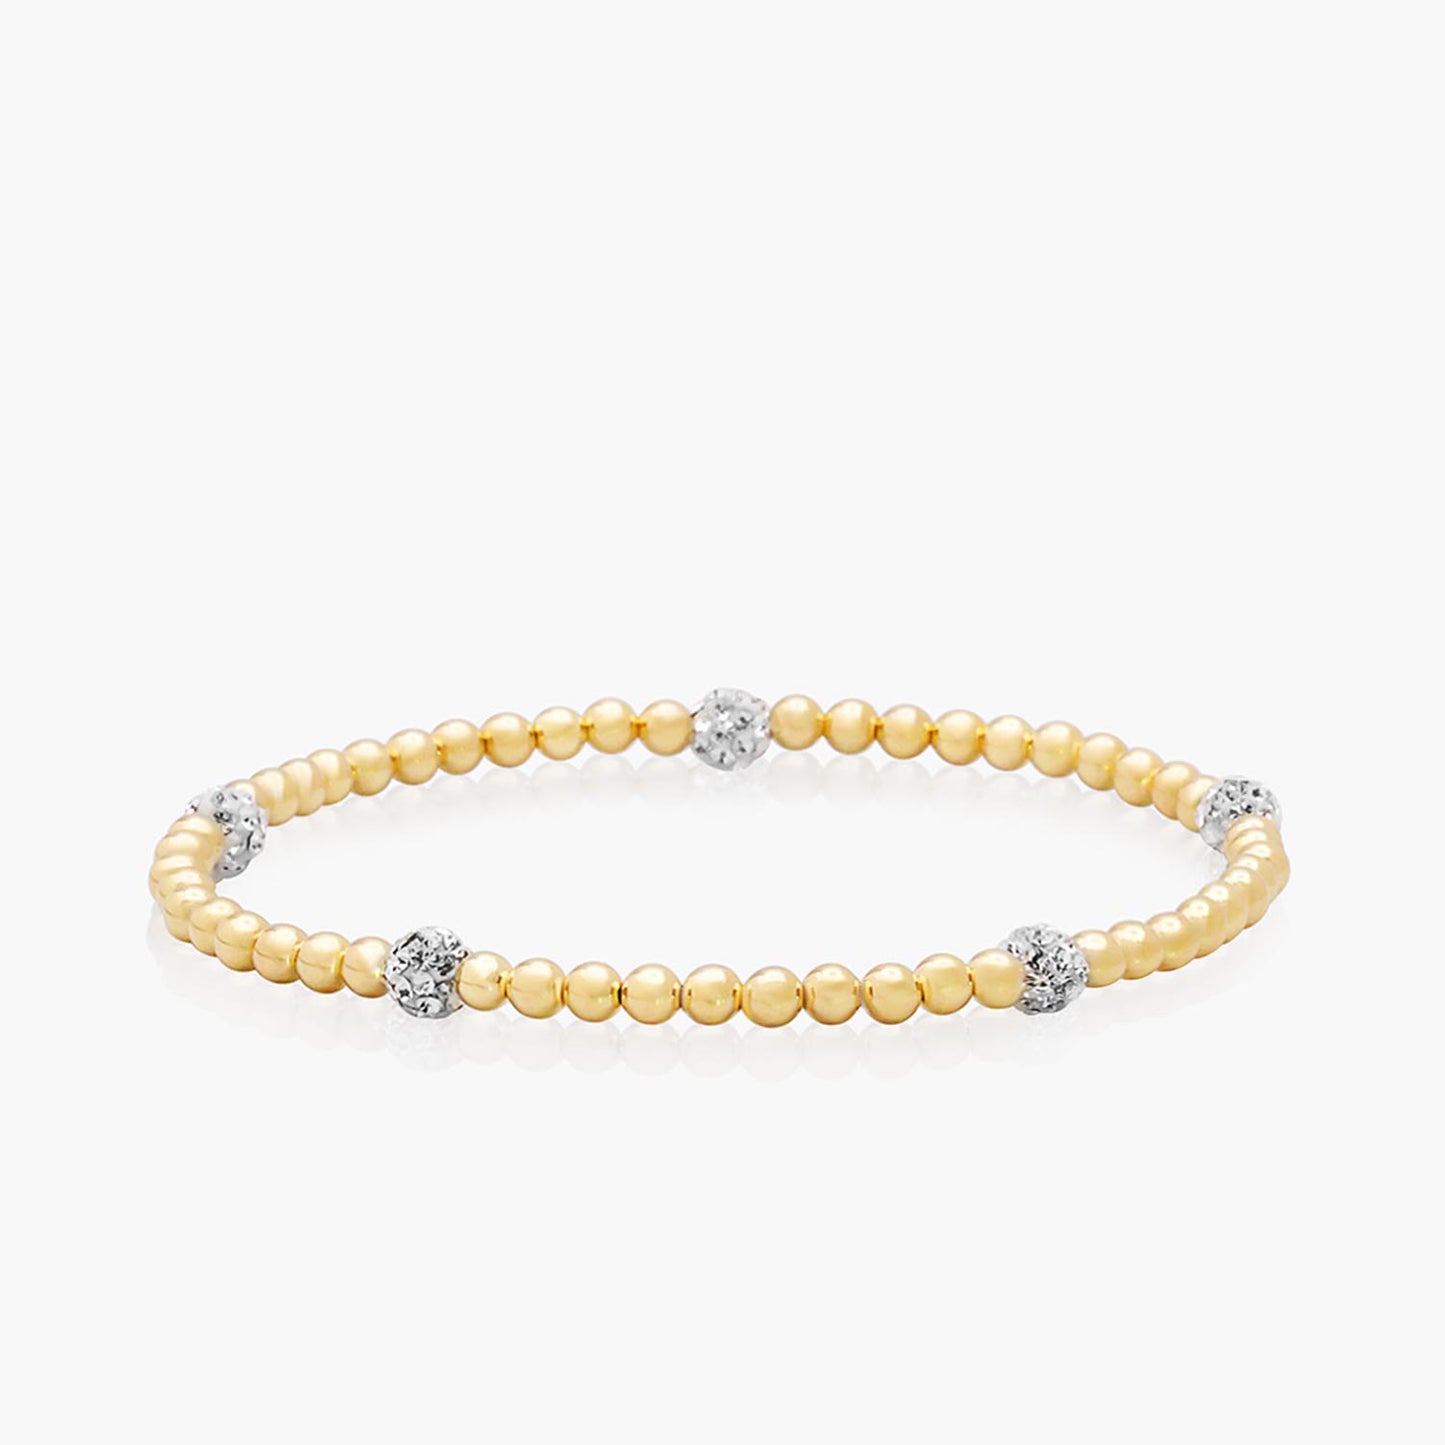 Playa Luna Jewelry Gold Filled Bead Bracelet with Gems Zoe